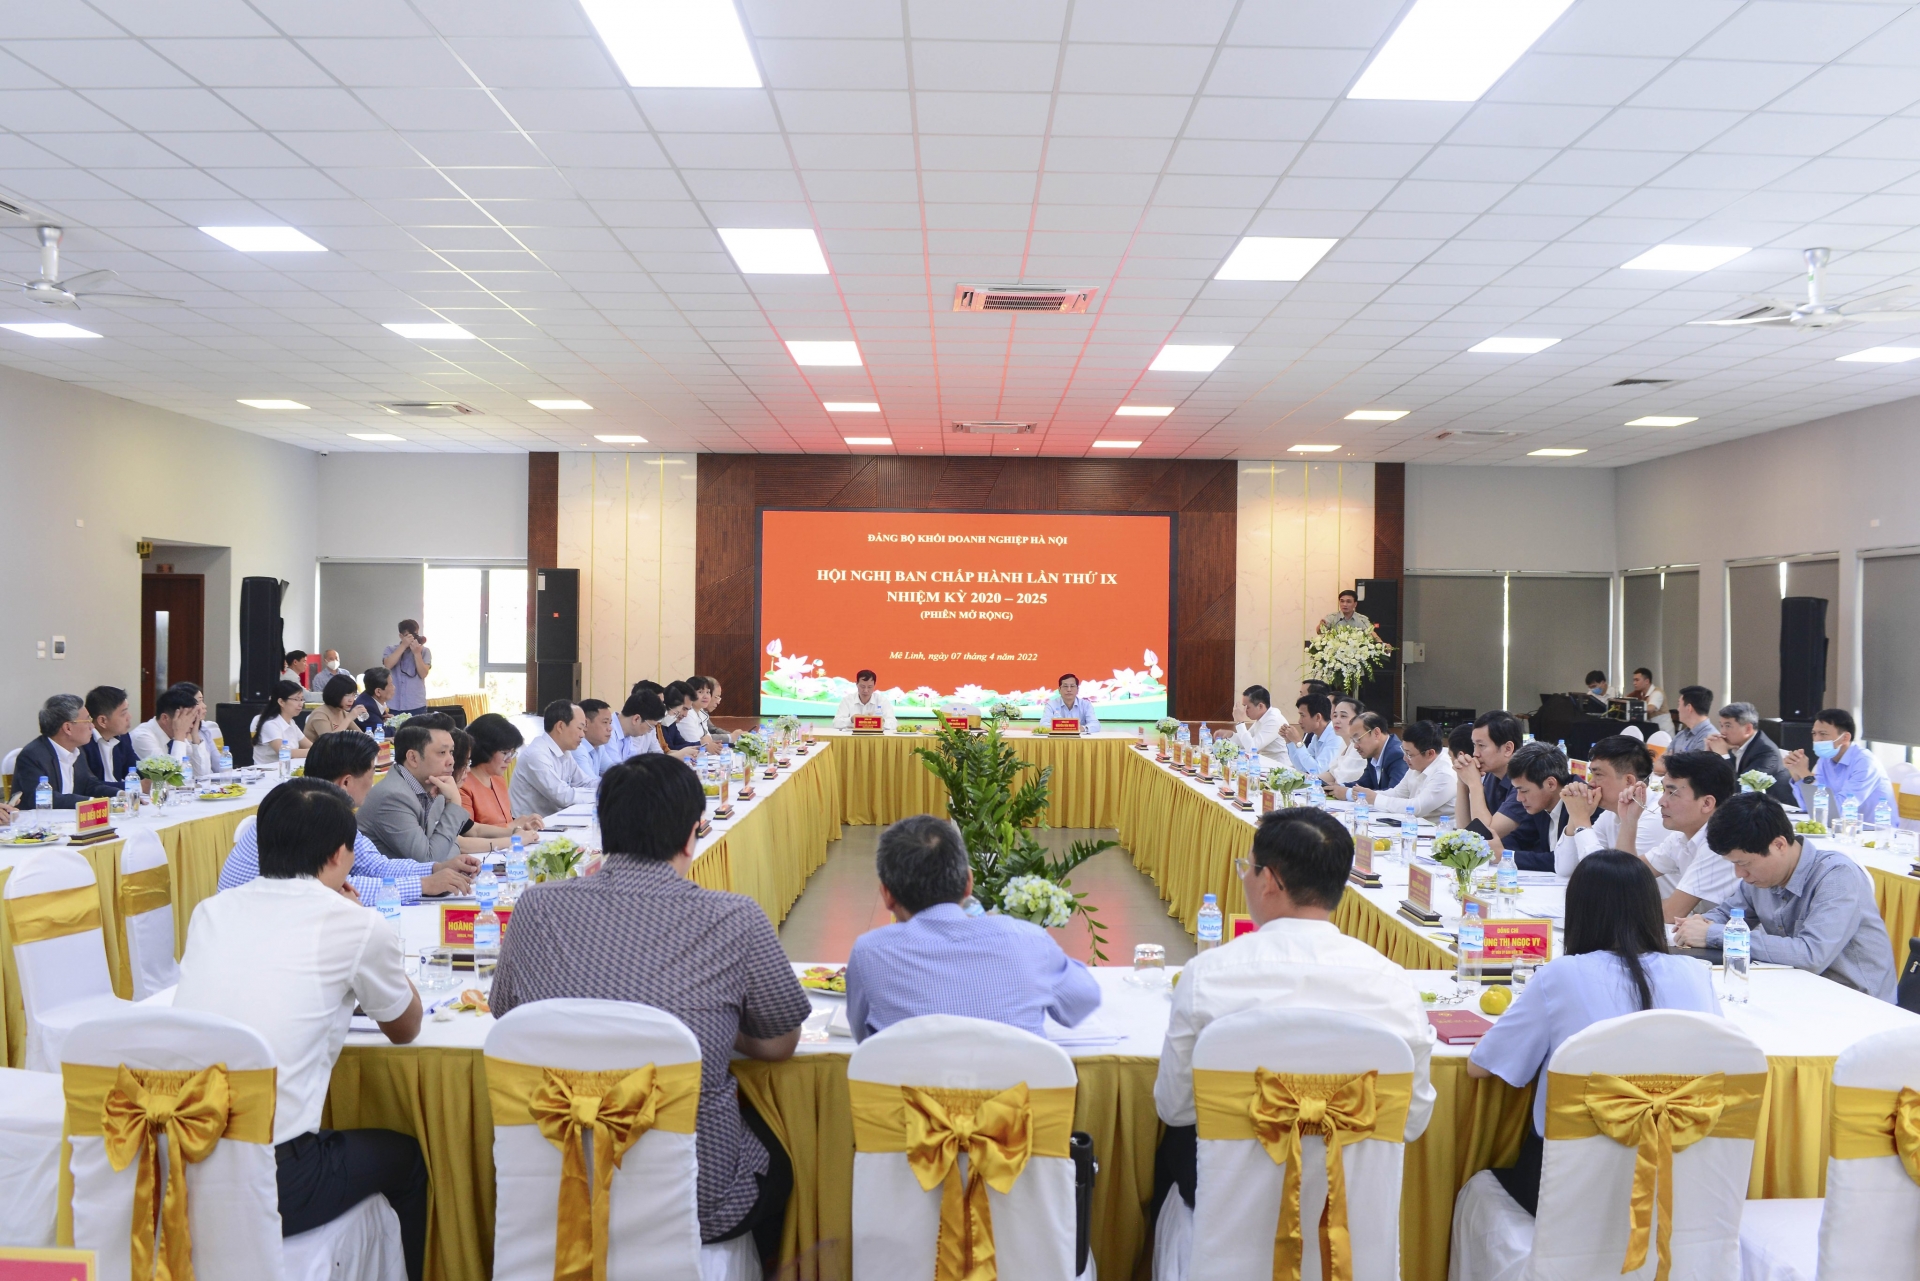 URENCO tích cực tham gia đẩy mạnh liên kết, hợp tác phát triển doanh nghiệp trong Khối doanh nghiệp Hà Nội